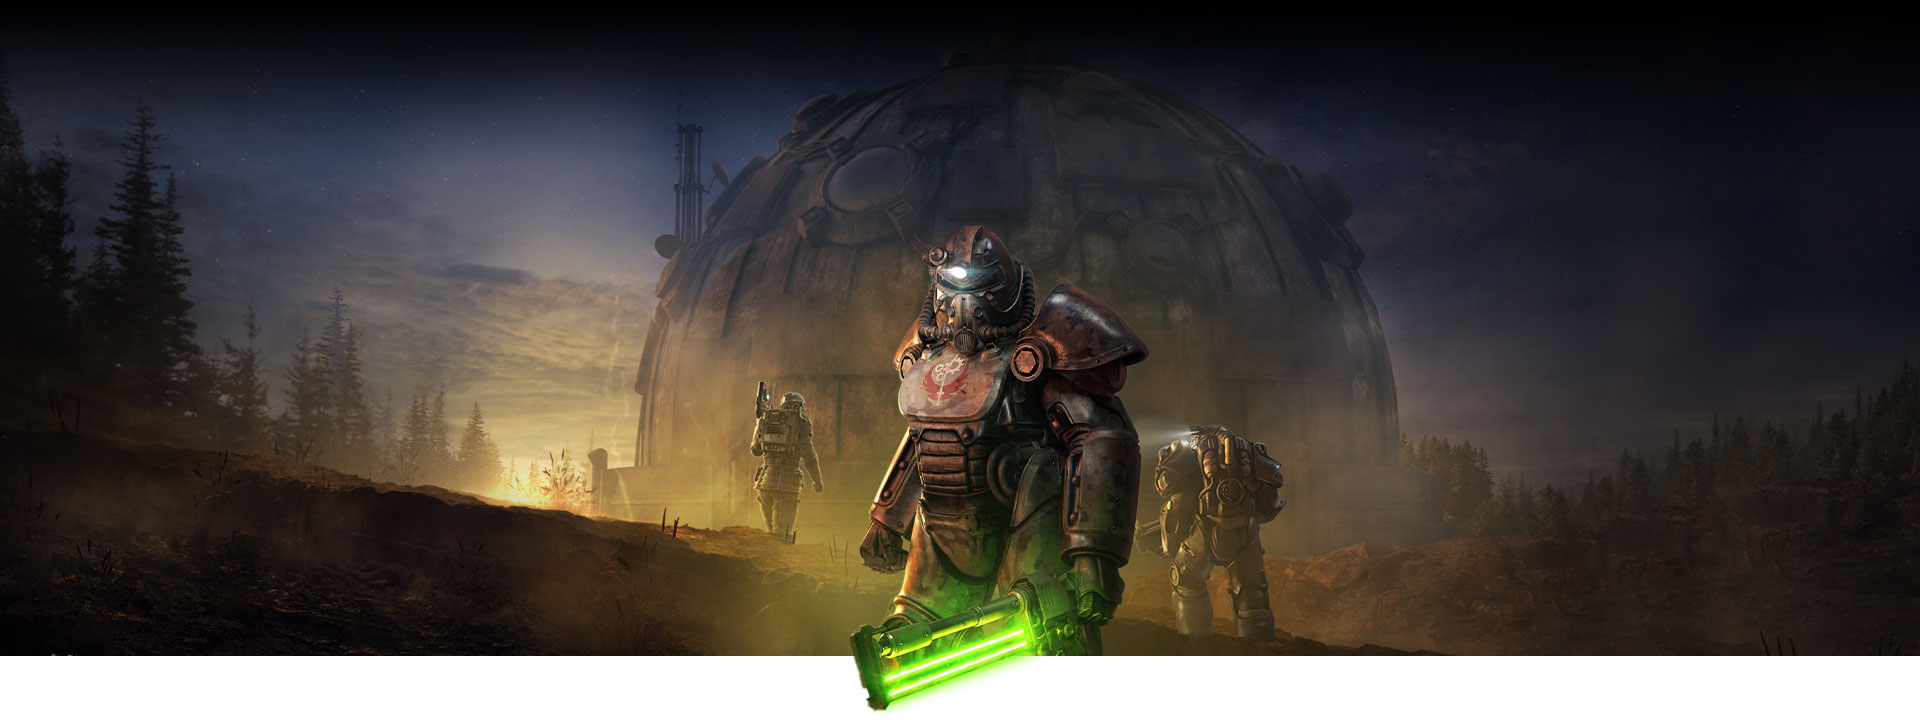 Power Armort viselő karakter izzó közelharci fegyverekkel egy nagy kupolaépület előtt